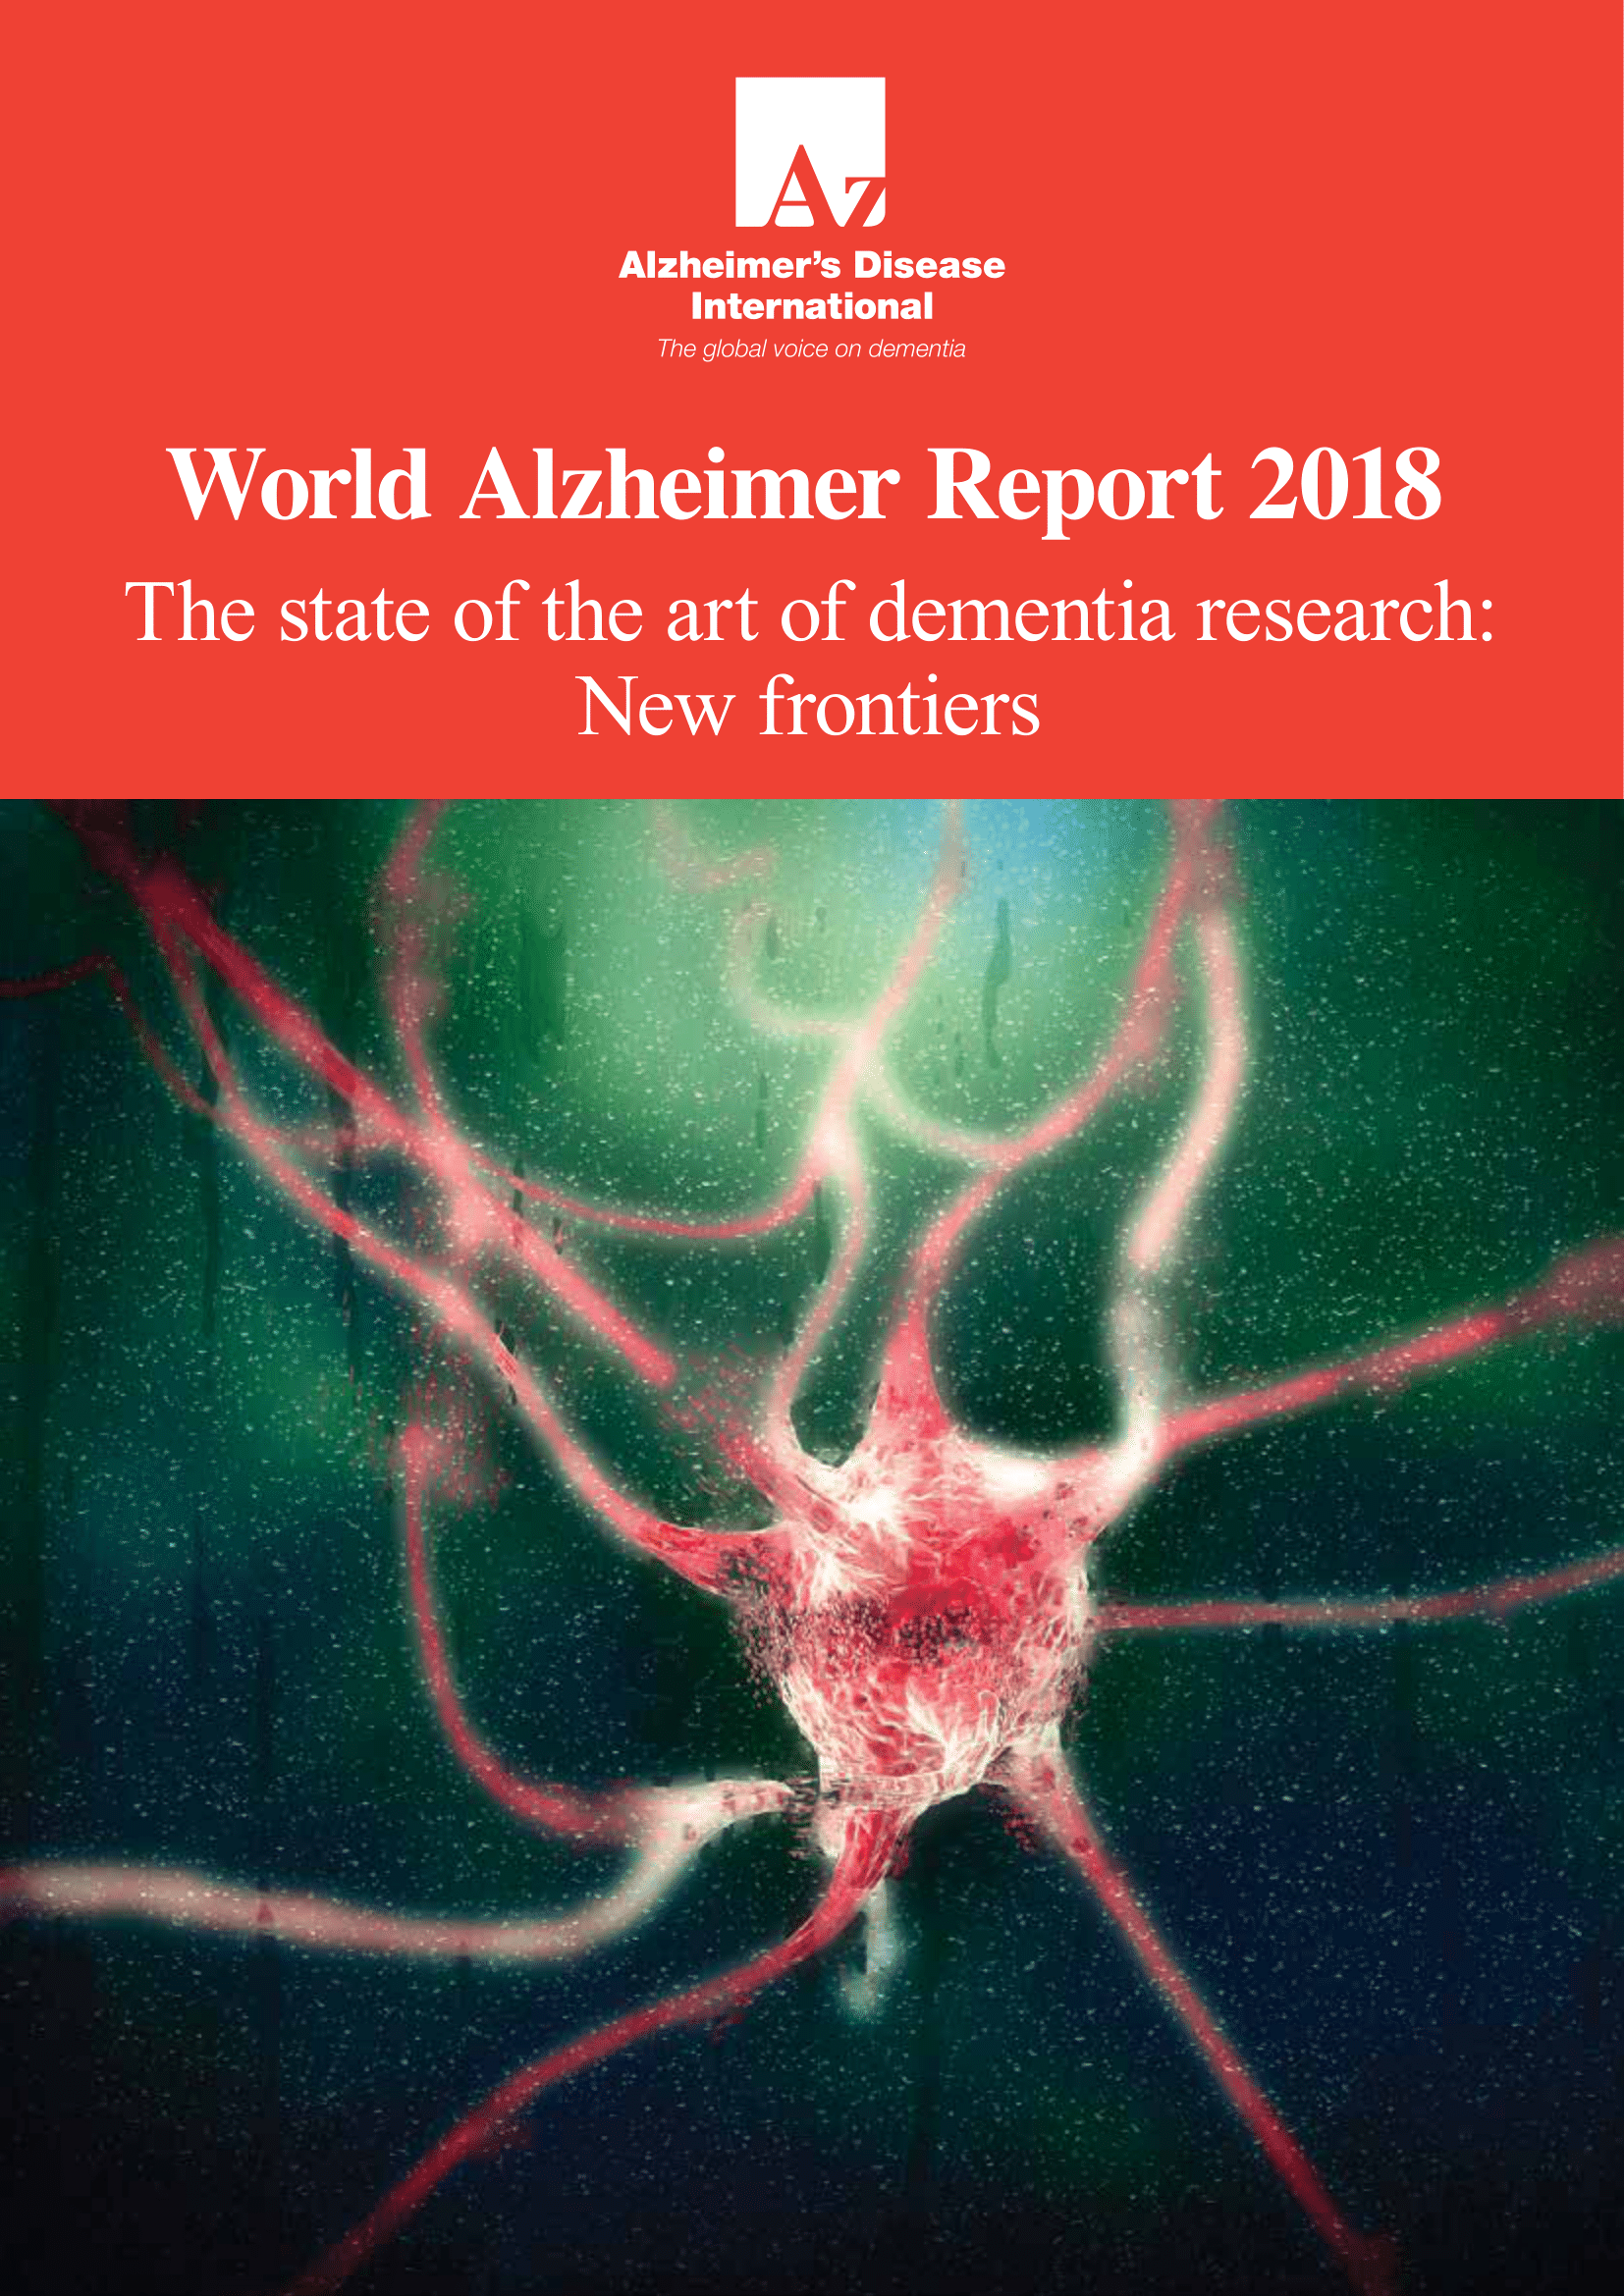 alzheimer's research news